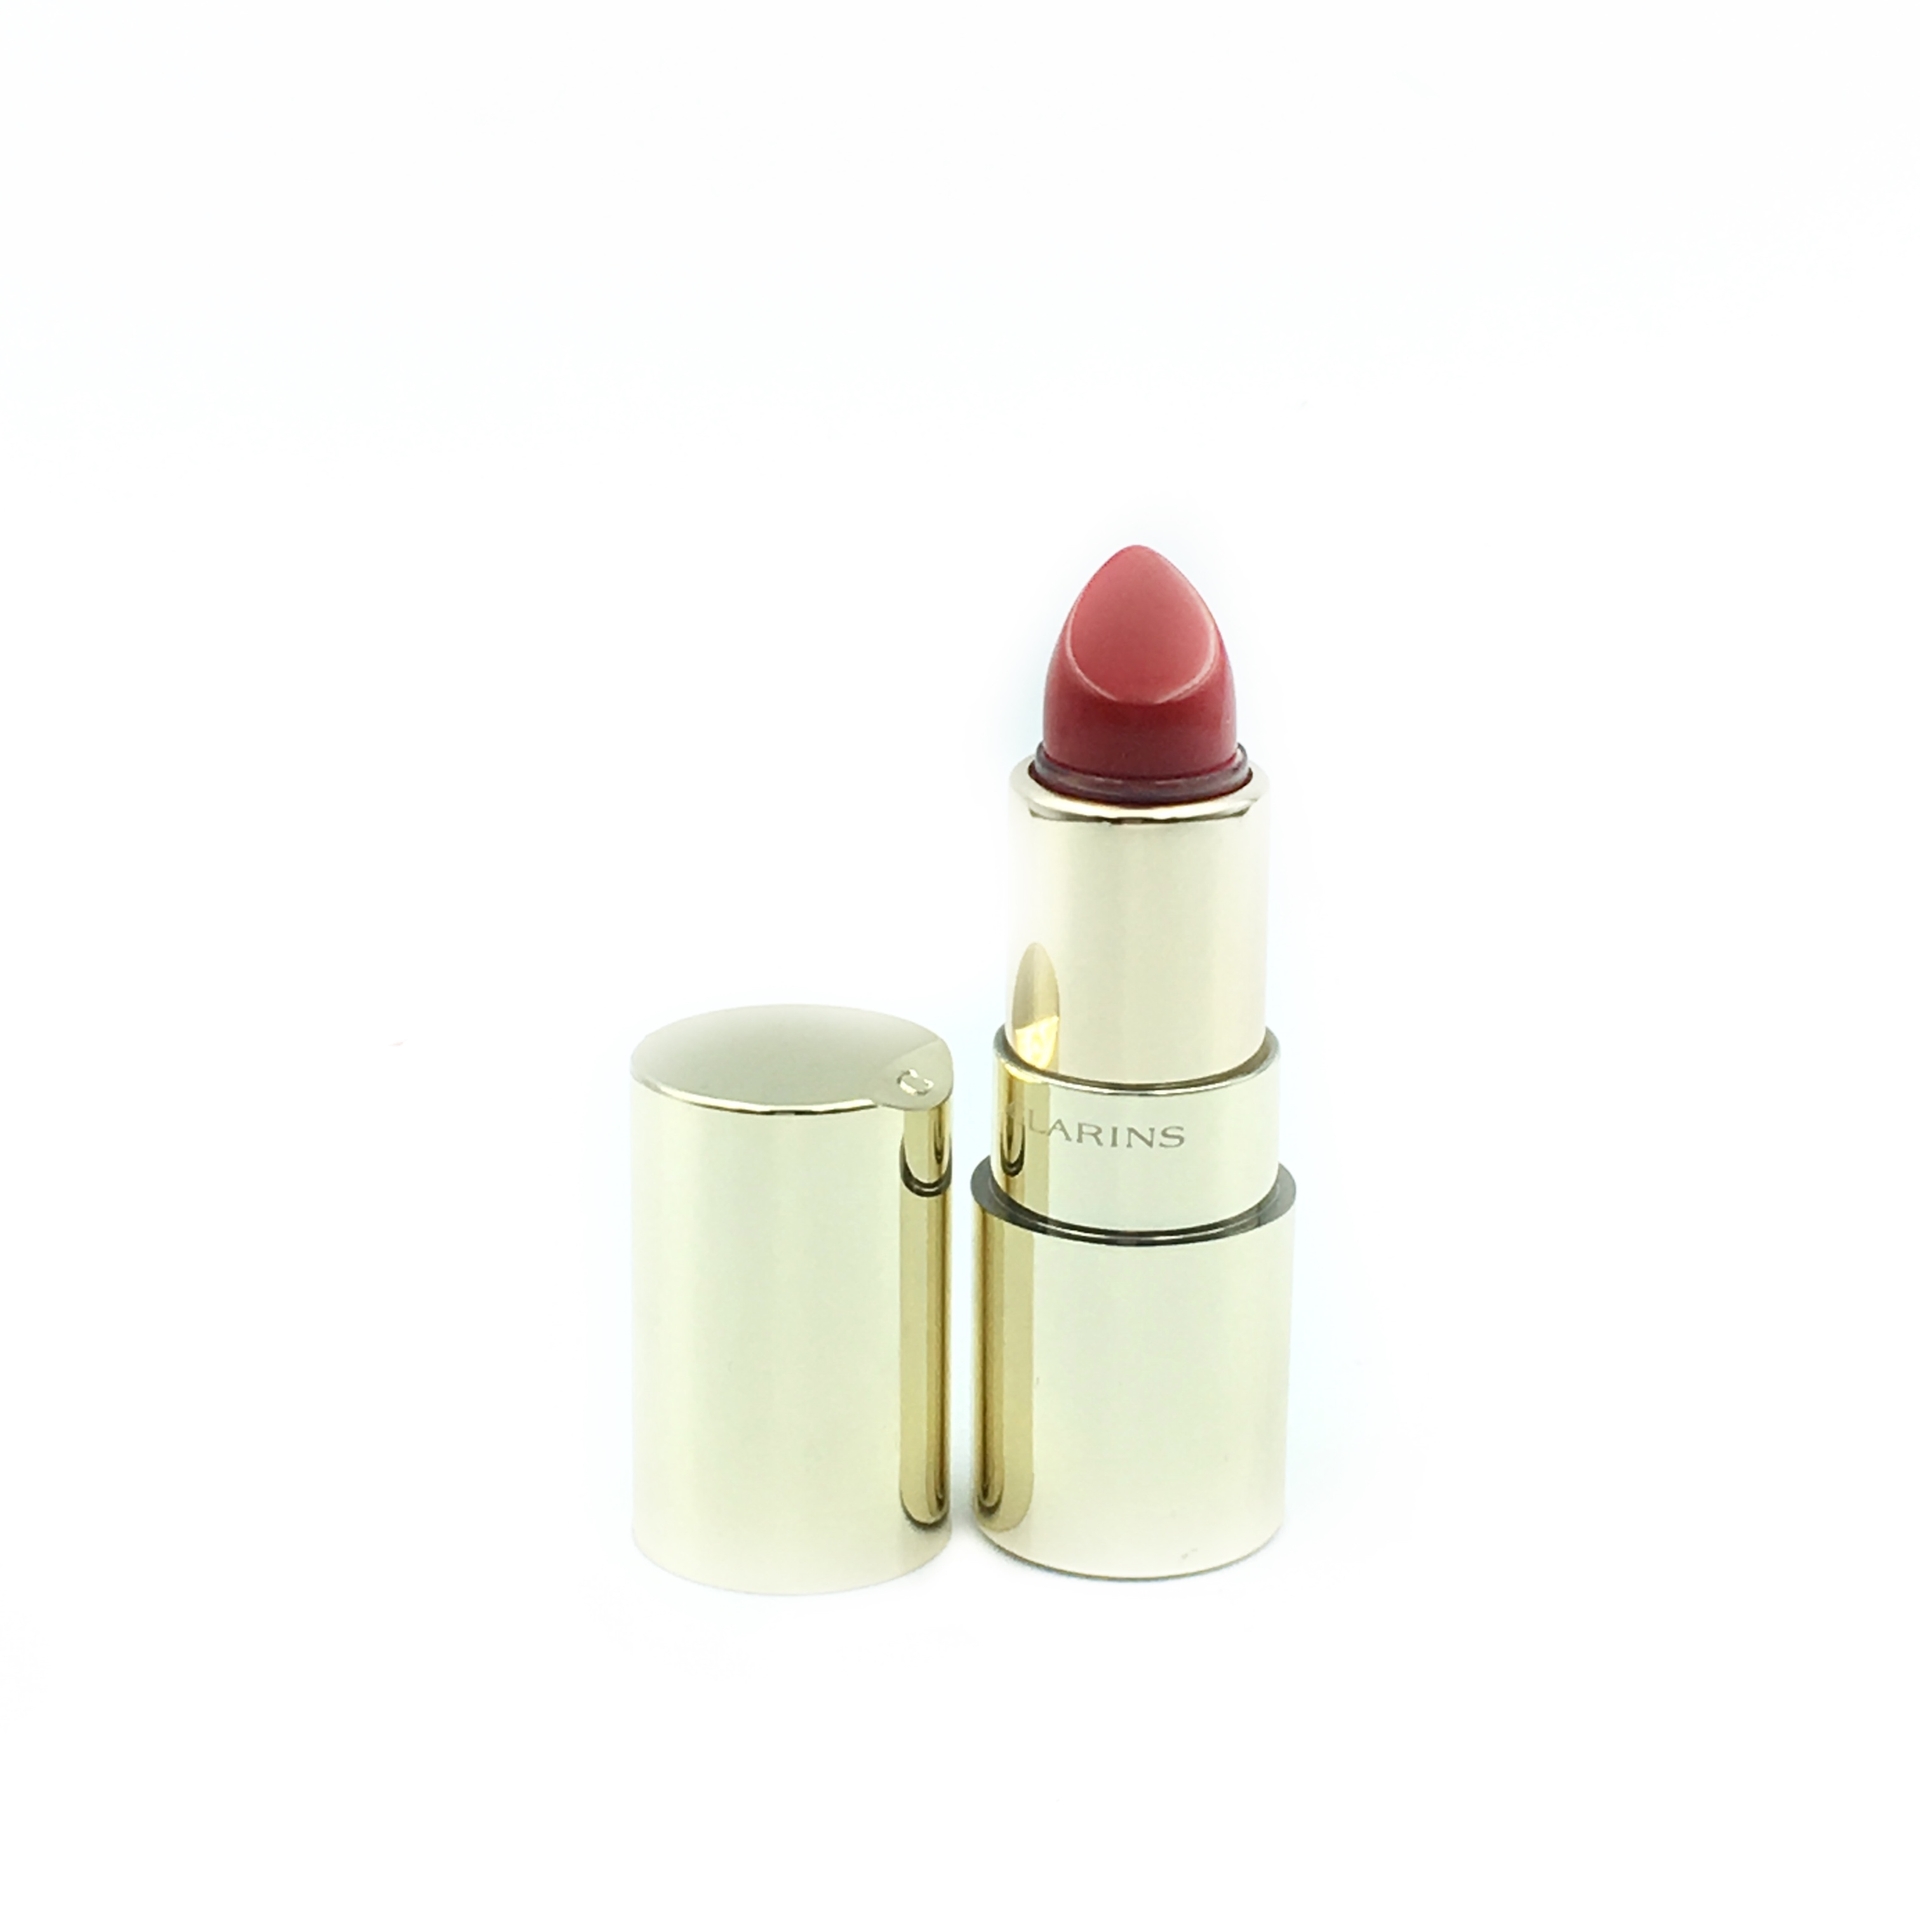 Clarins Juli Rouge 742 Hydratation Tenue Moisturizing Long-Wearing Lipstick Lips